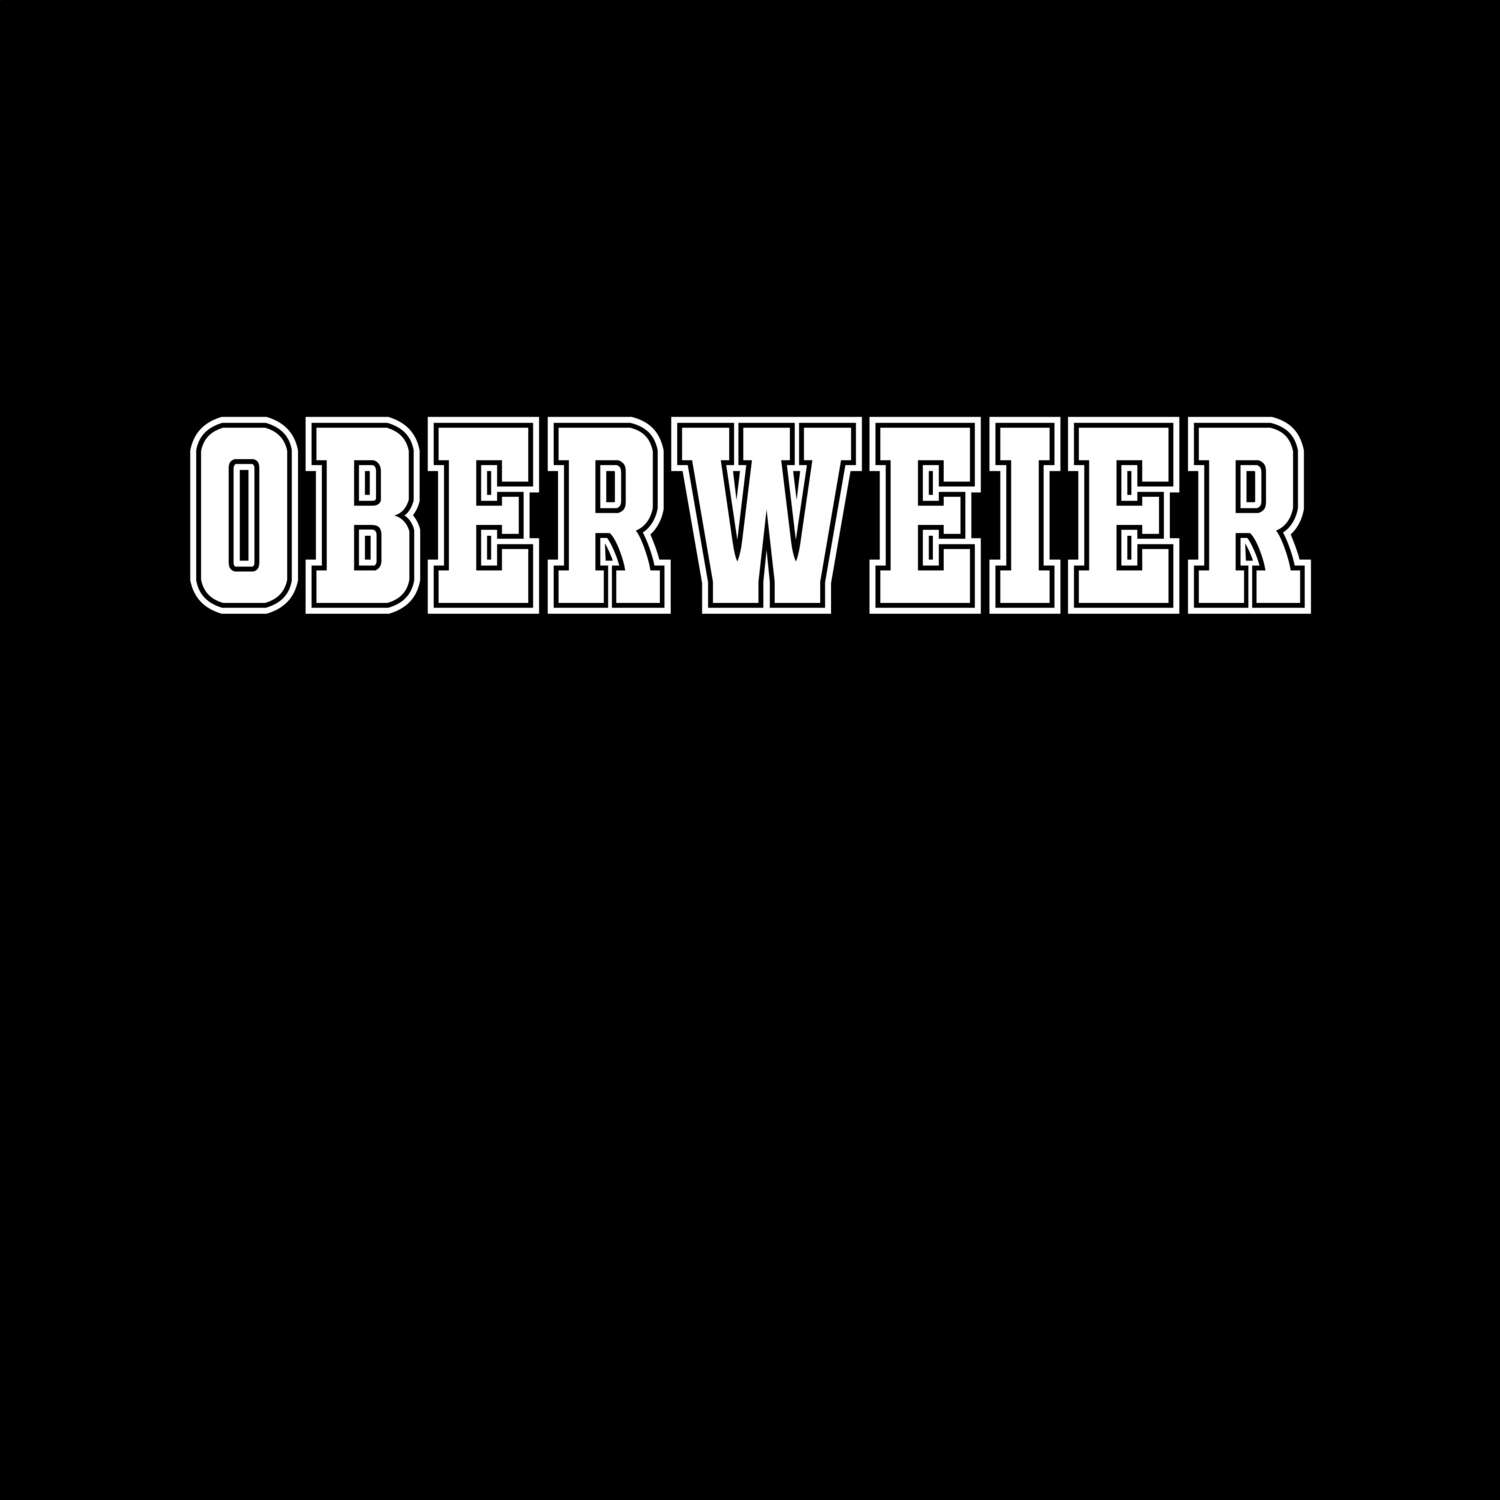 Oberweier T-Shirt »Classic«